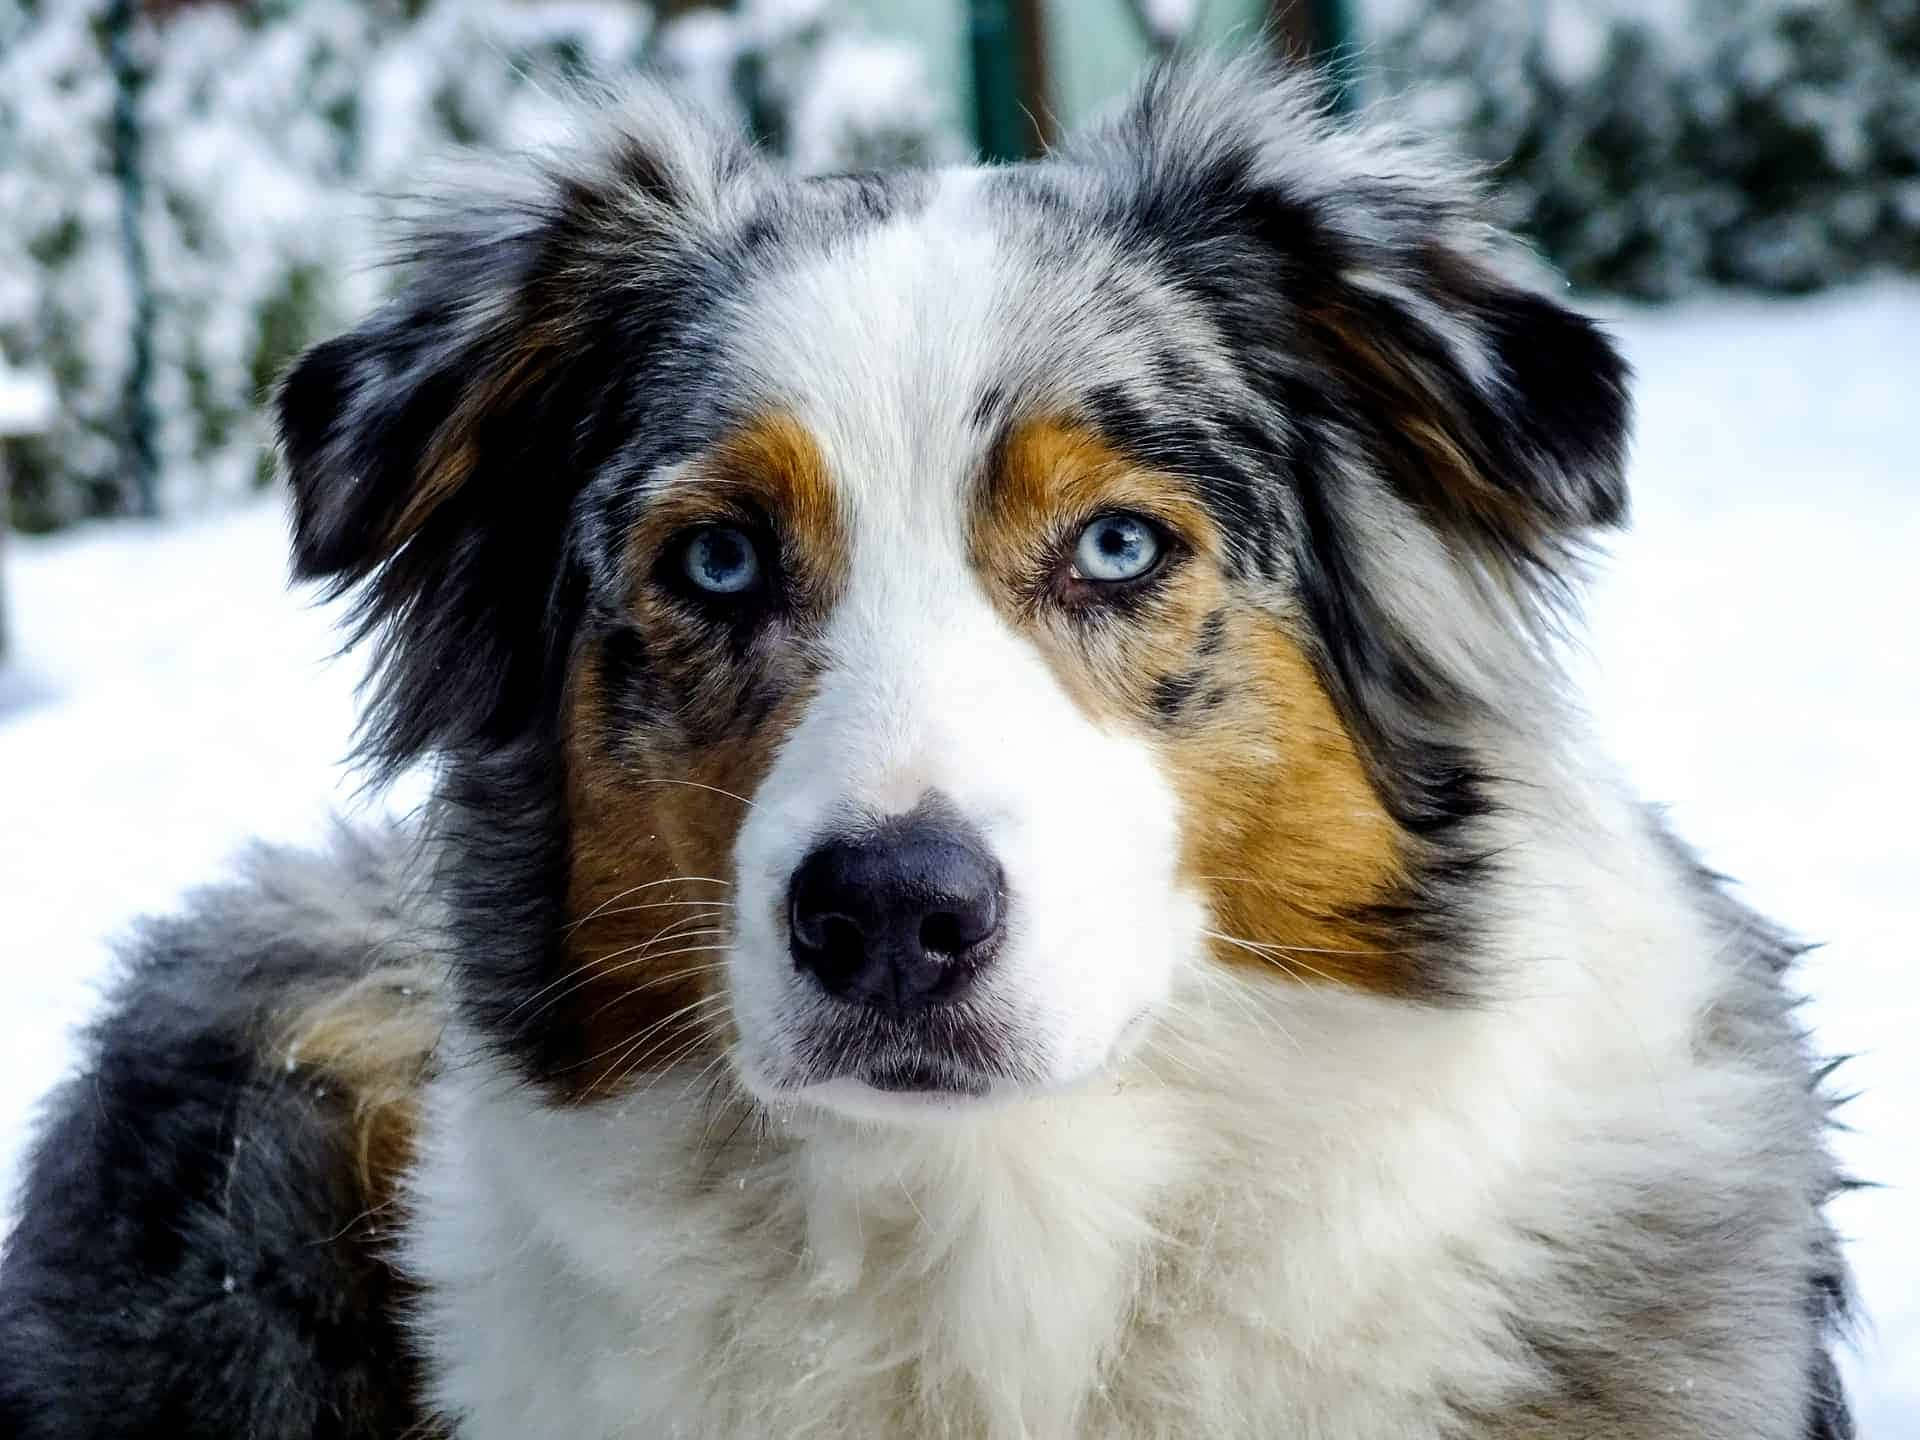 Imagende Un Perro Pastor Australiano En La Nieve Invernal